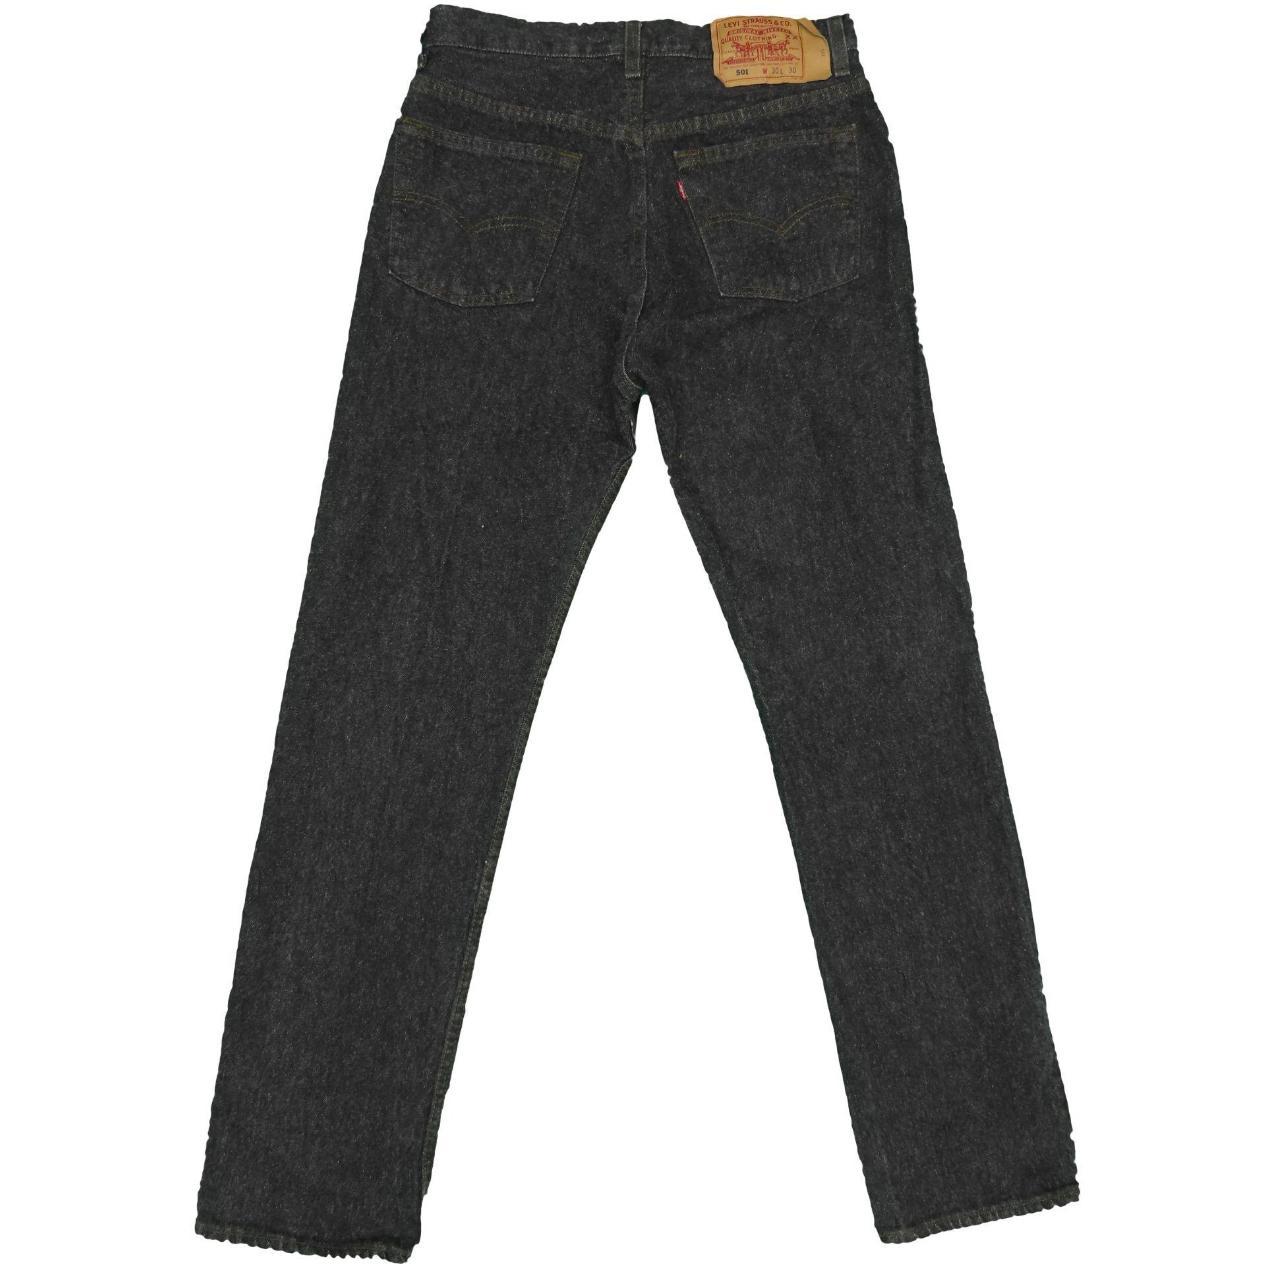 1990s Vintage Levis 501 Graphite Black Jeans... - Depop